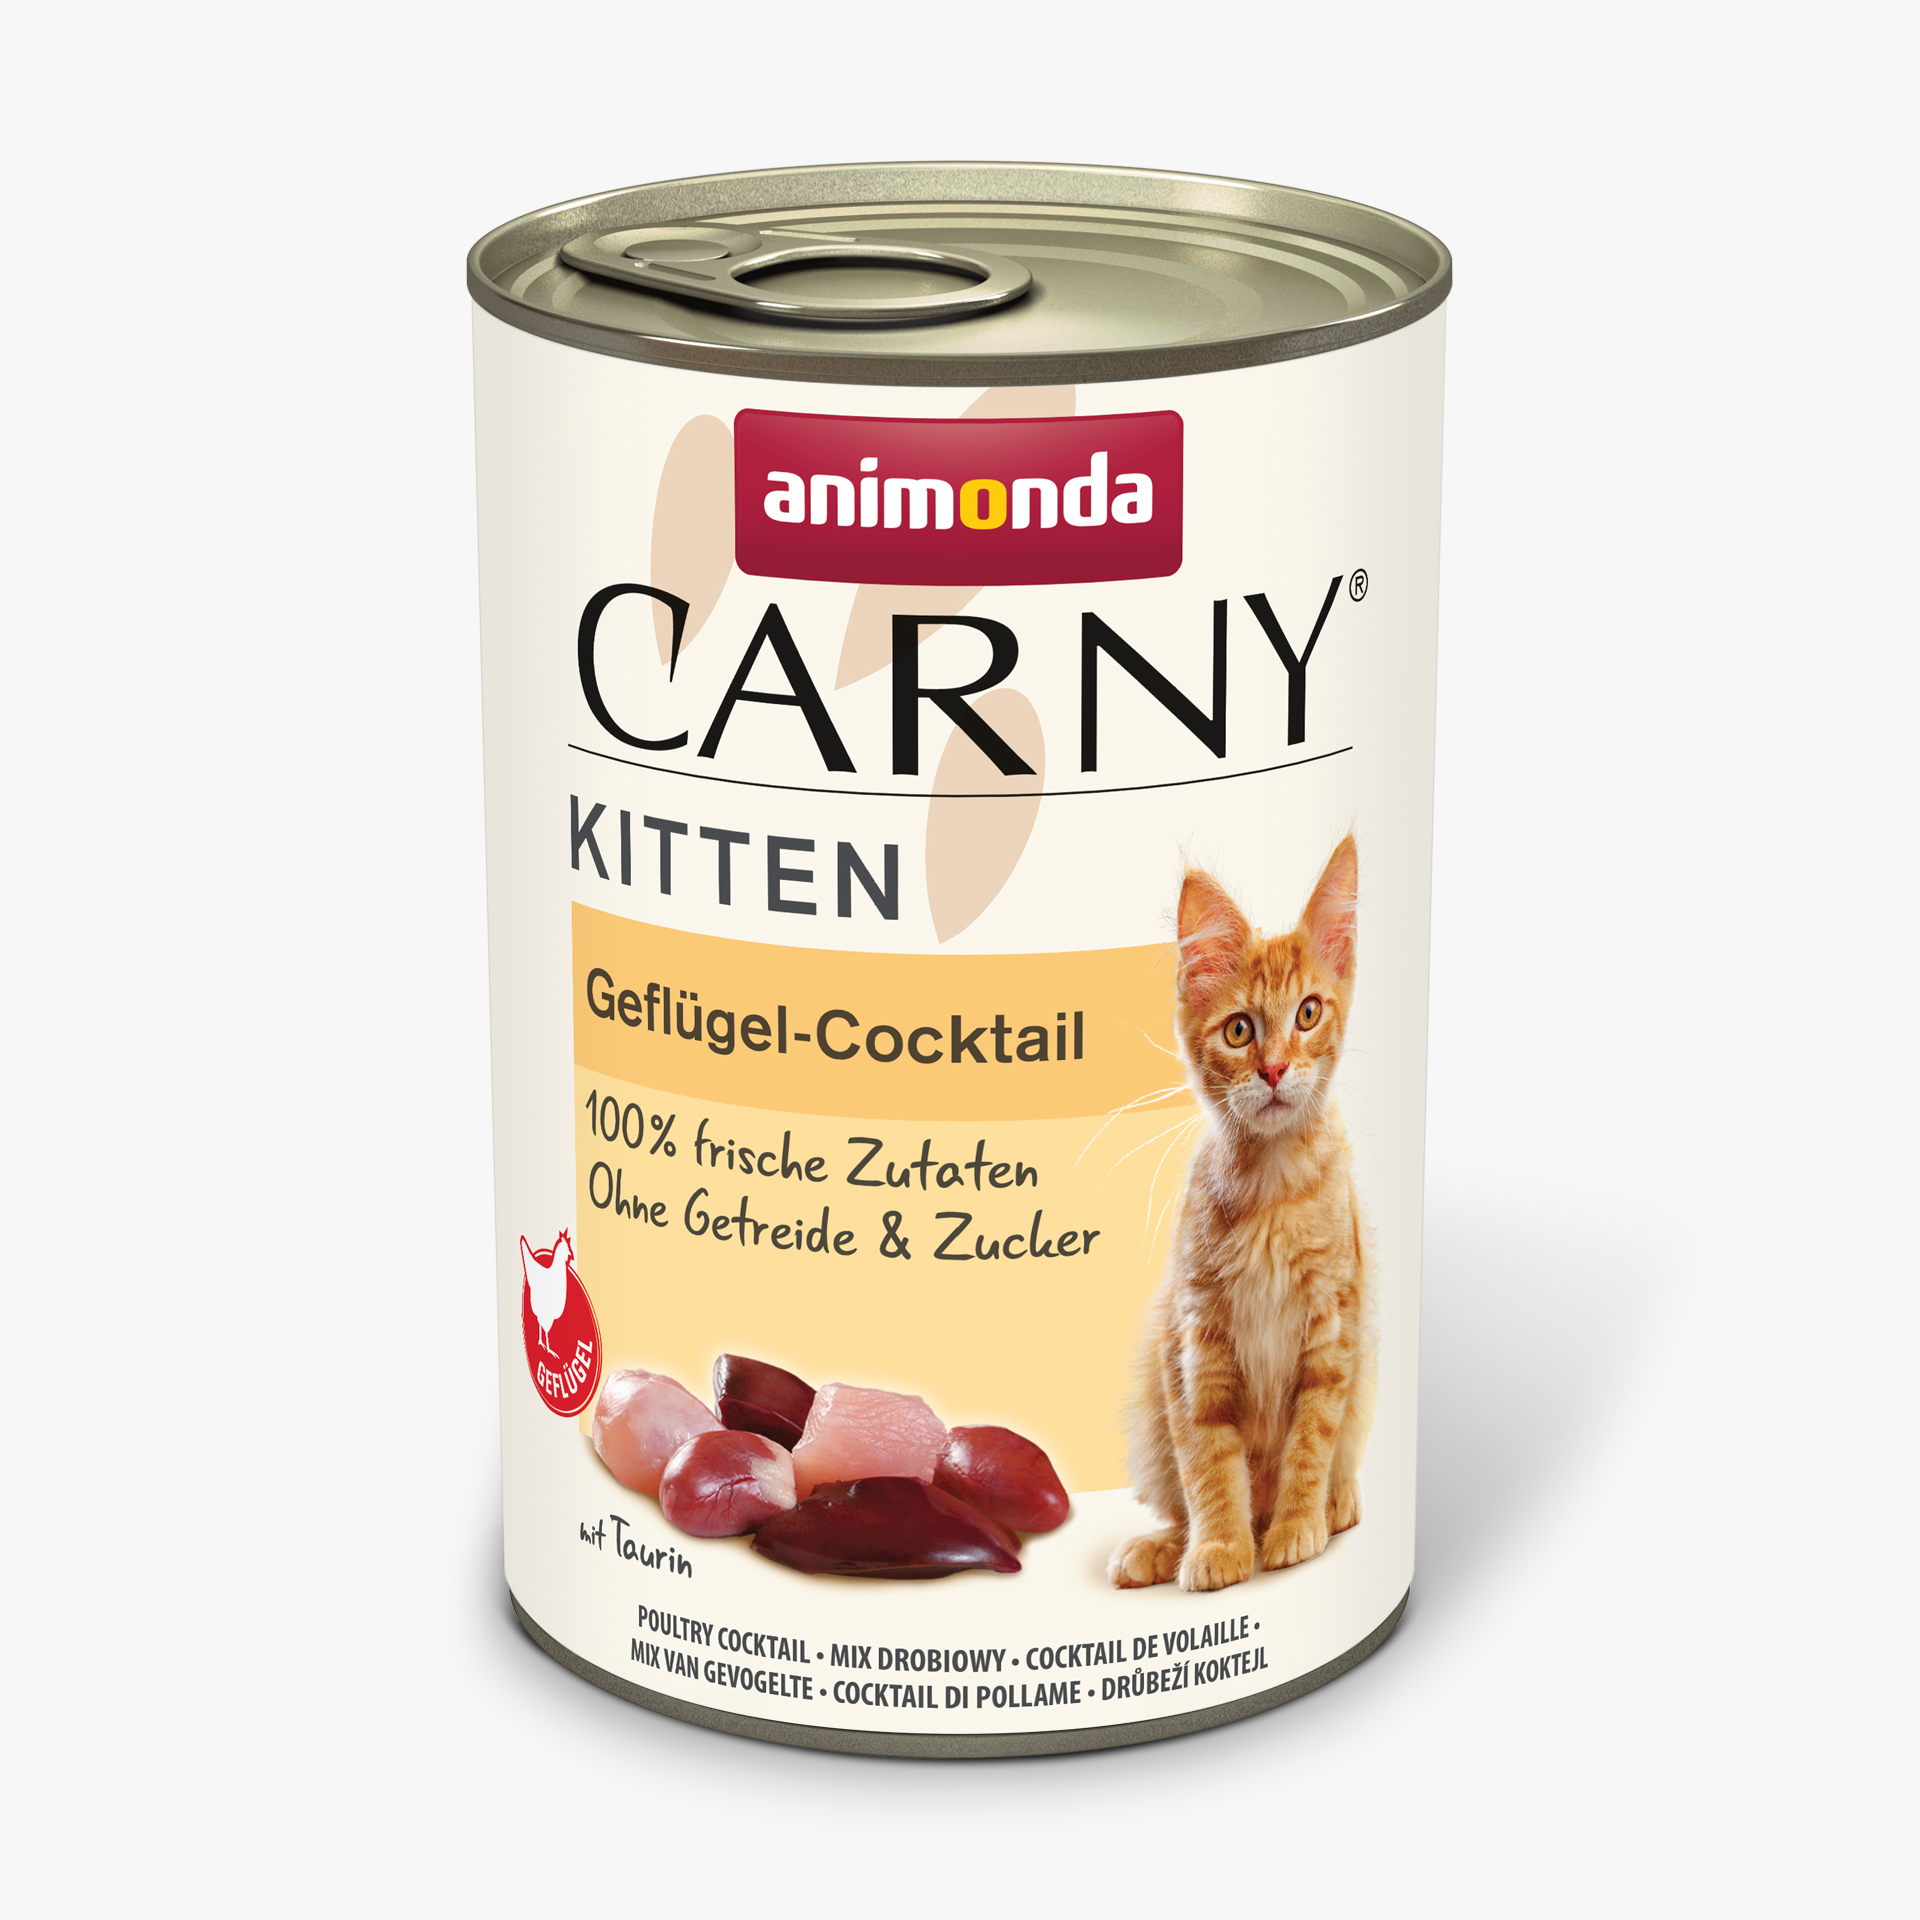 Carny Kitten Geflügel-Cocktail